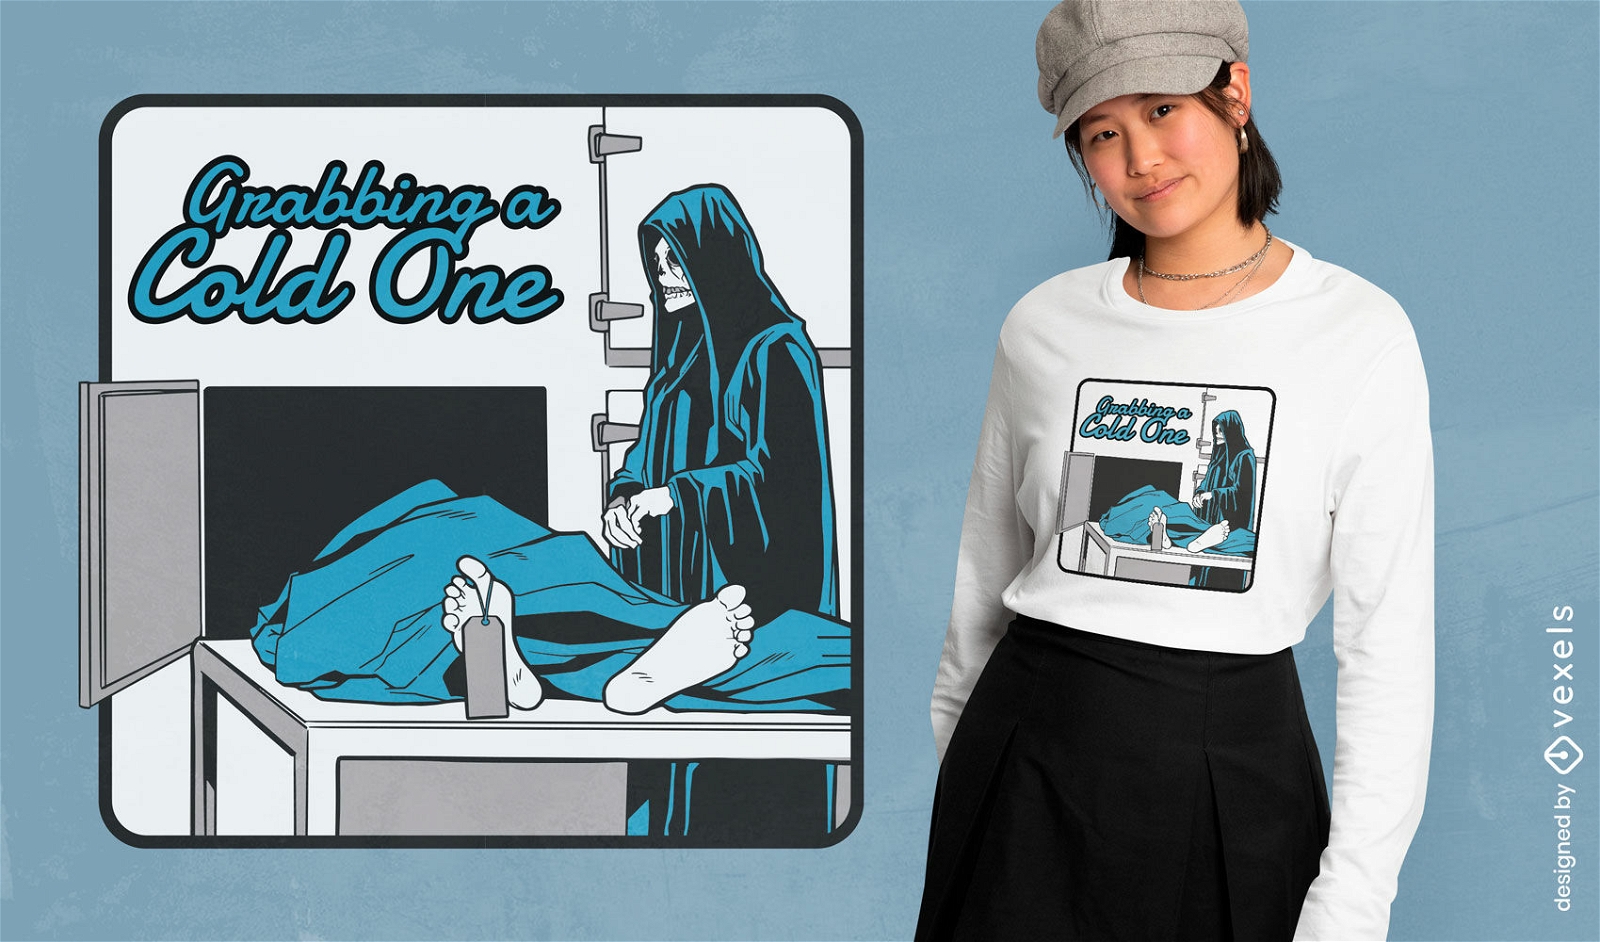 Schnappen Sie sich ein T-Shirt-Design mit kaltem, schwarzem Humor